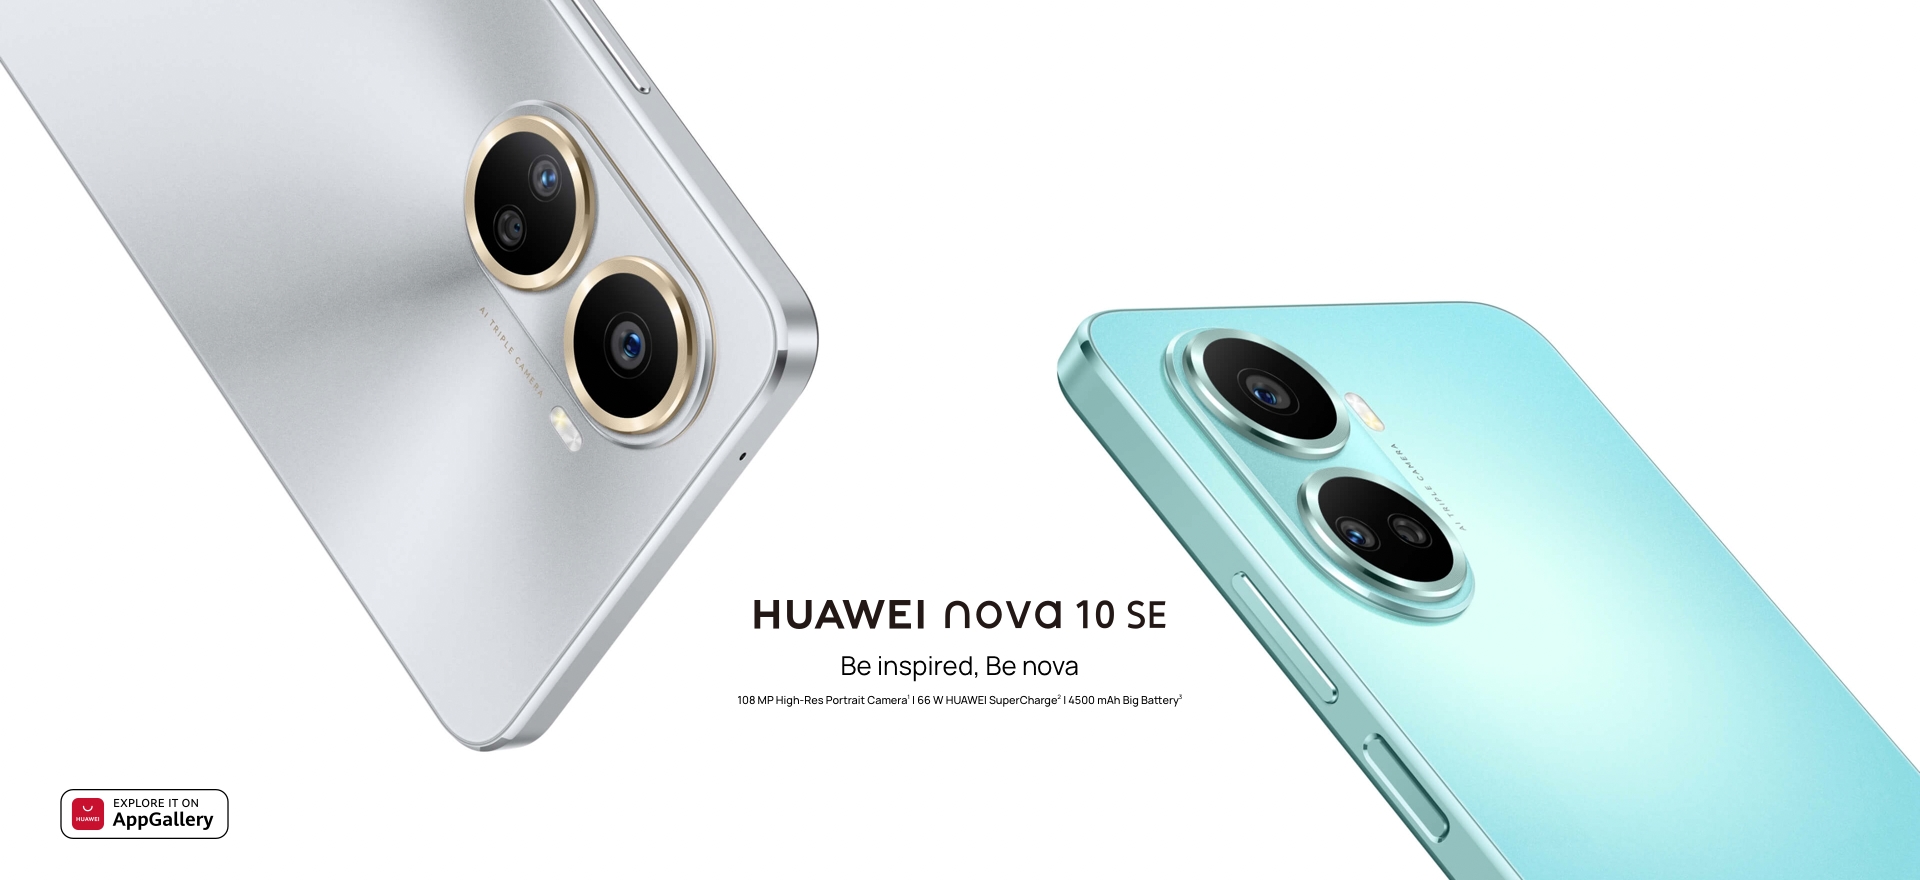 Puce Snapdragon 680G, appareil photo de 108 MP et charge rapide de 66W : Huawei révèle les spécifications détaillées du smartphone Nova 10 SE